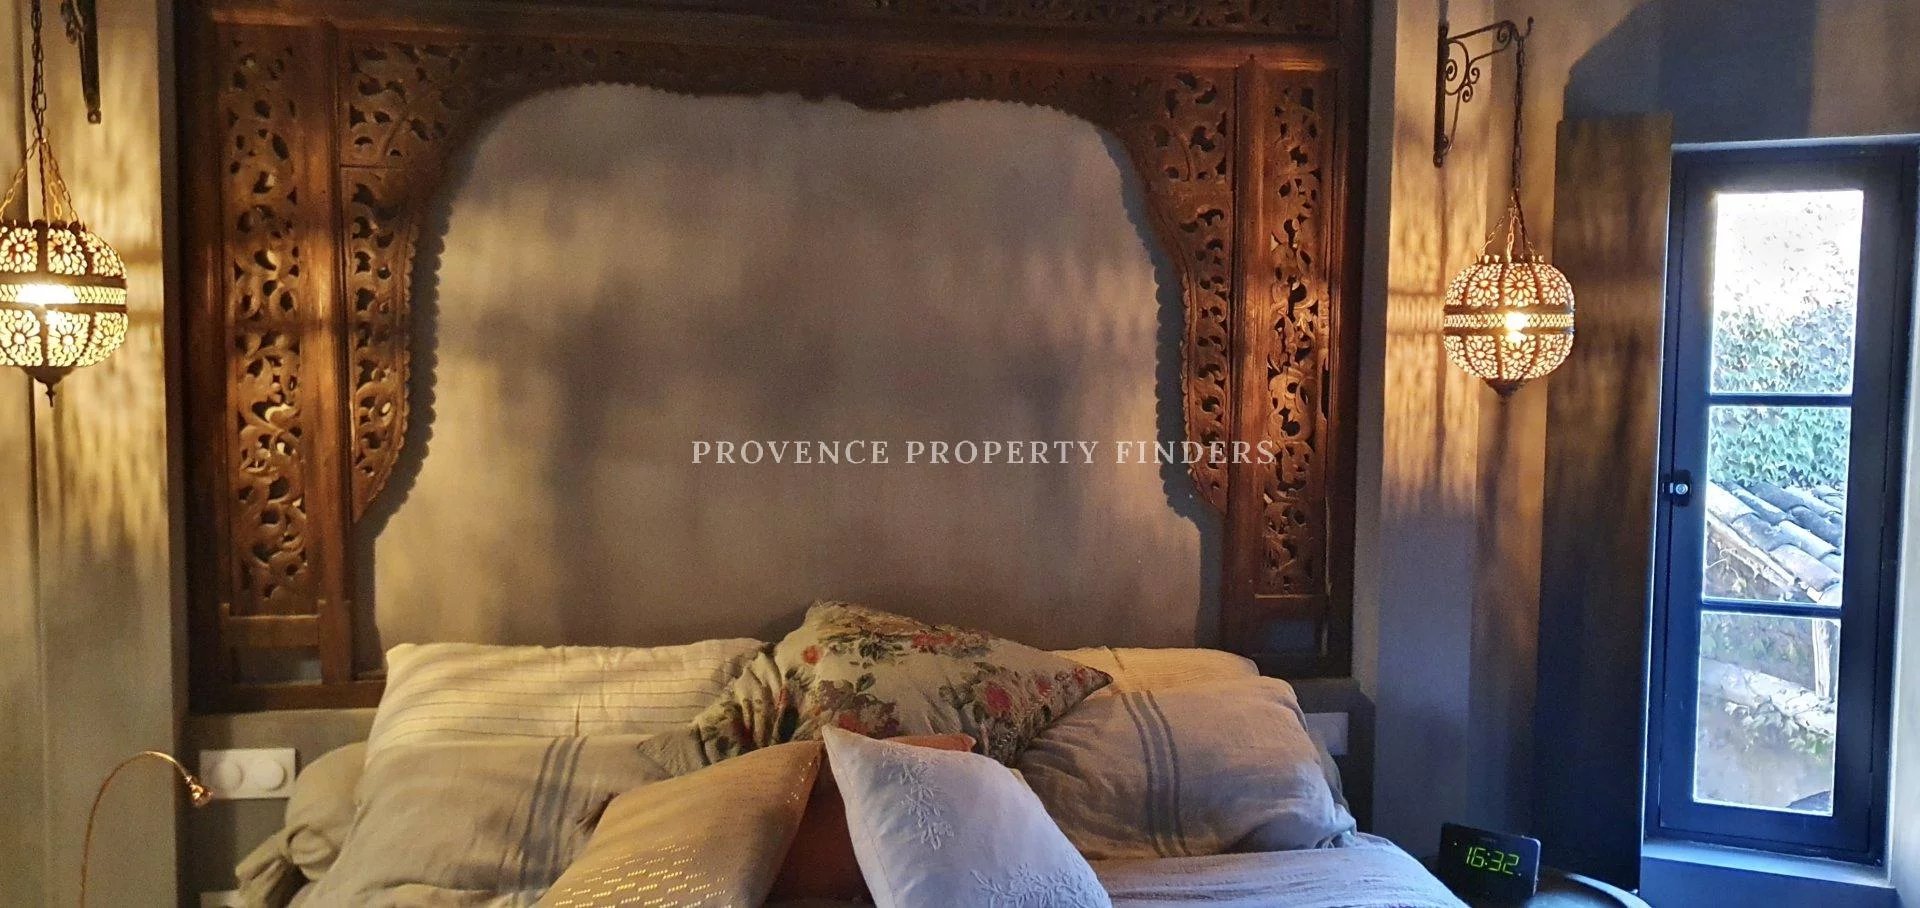 B&B. Gerenoveerde oude Provençaalse boerderij, 7 slaapkamers.